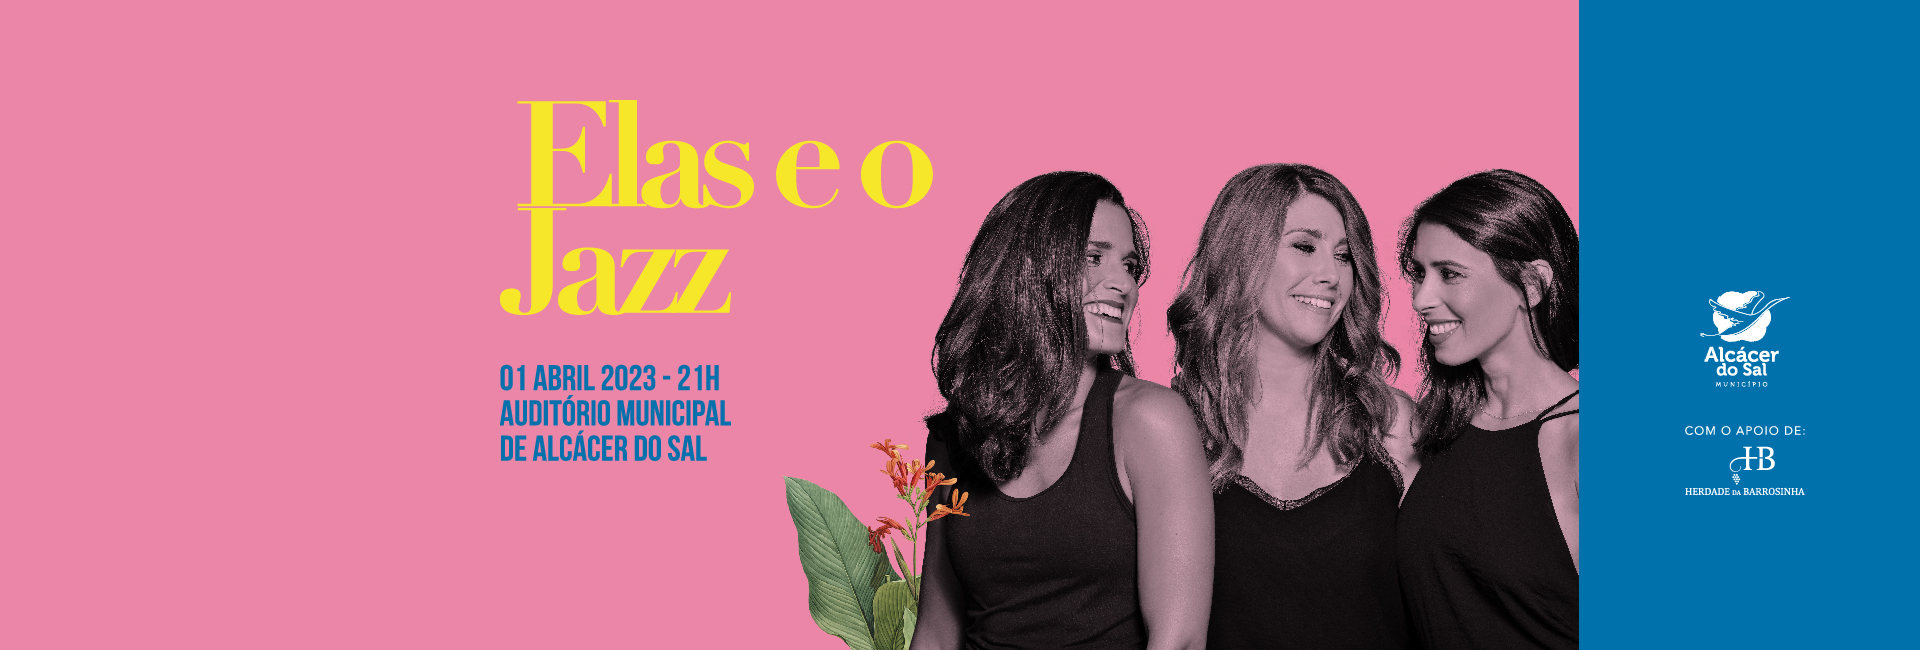 No próximo dia 1 de abril são “Elas e o Jazz” no Auditório Municipal de Alcácer